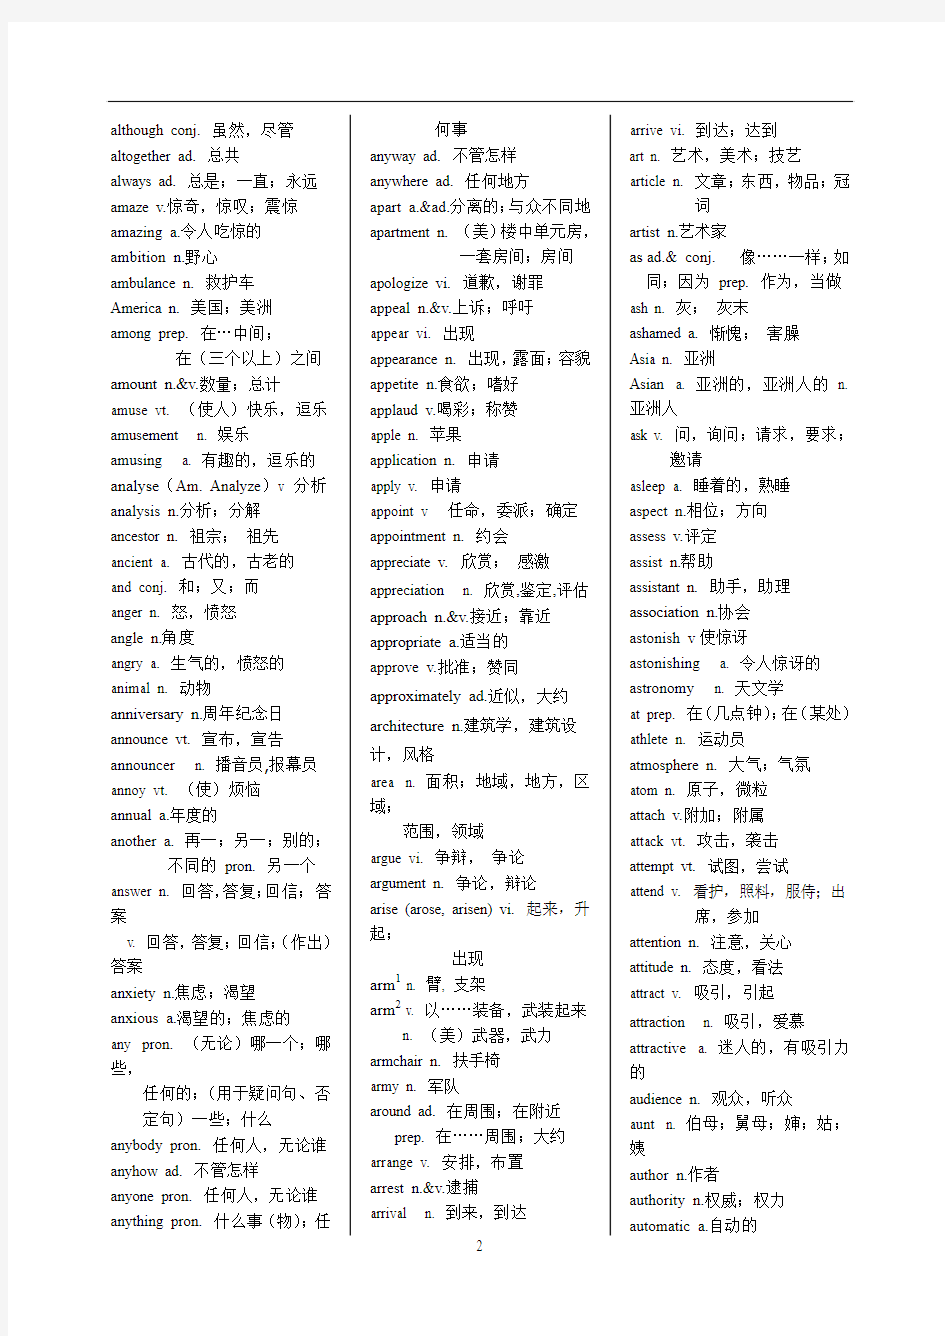 2012年浙江高考英语词汇表(含新增词汇)